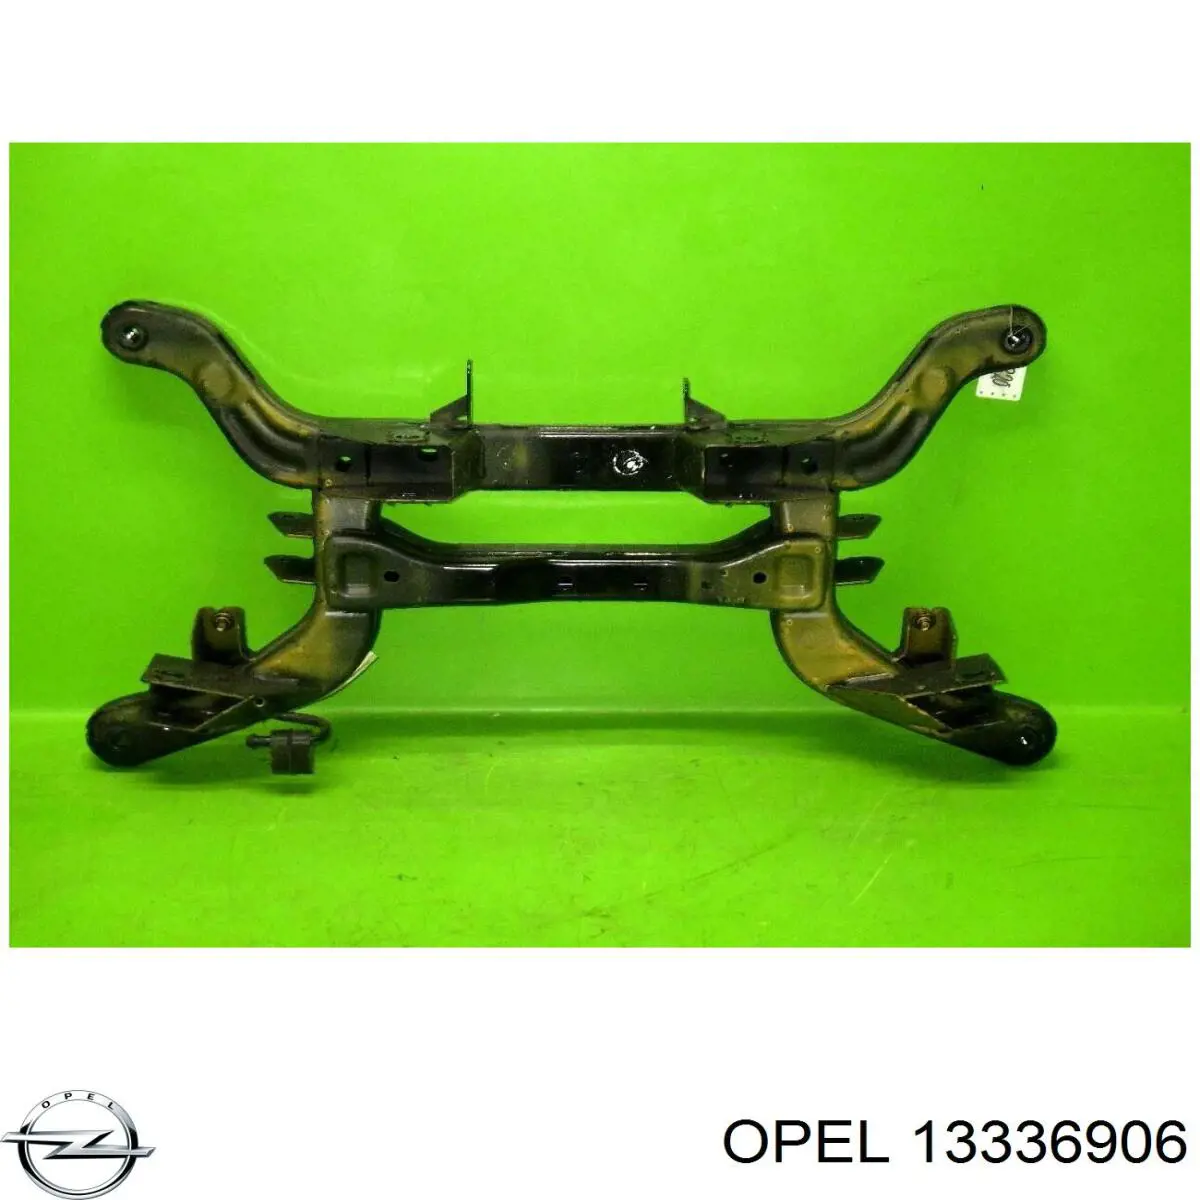 0402067 Opel subchasis trasero soporte motor